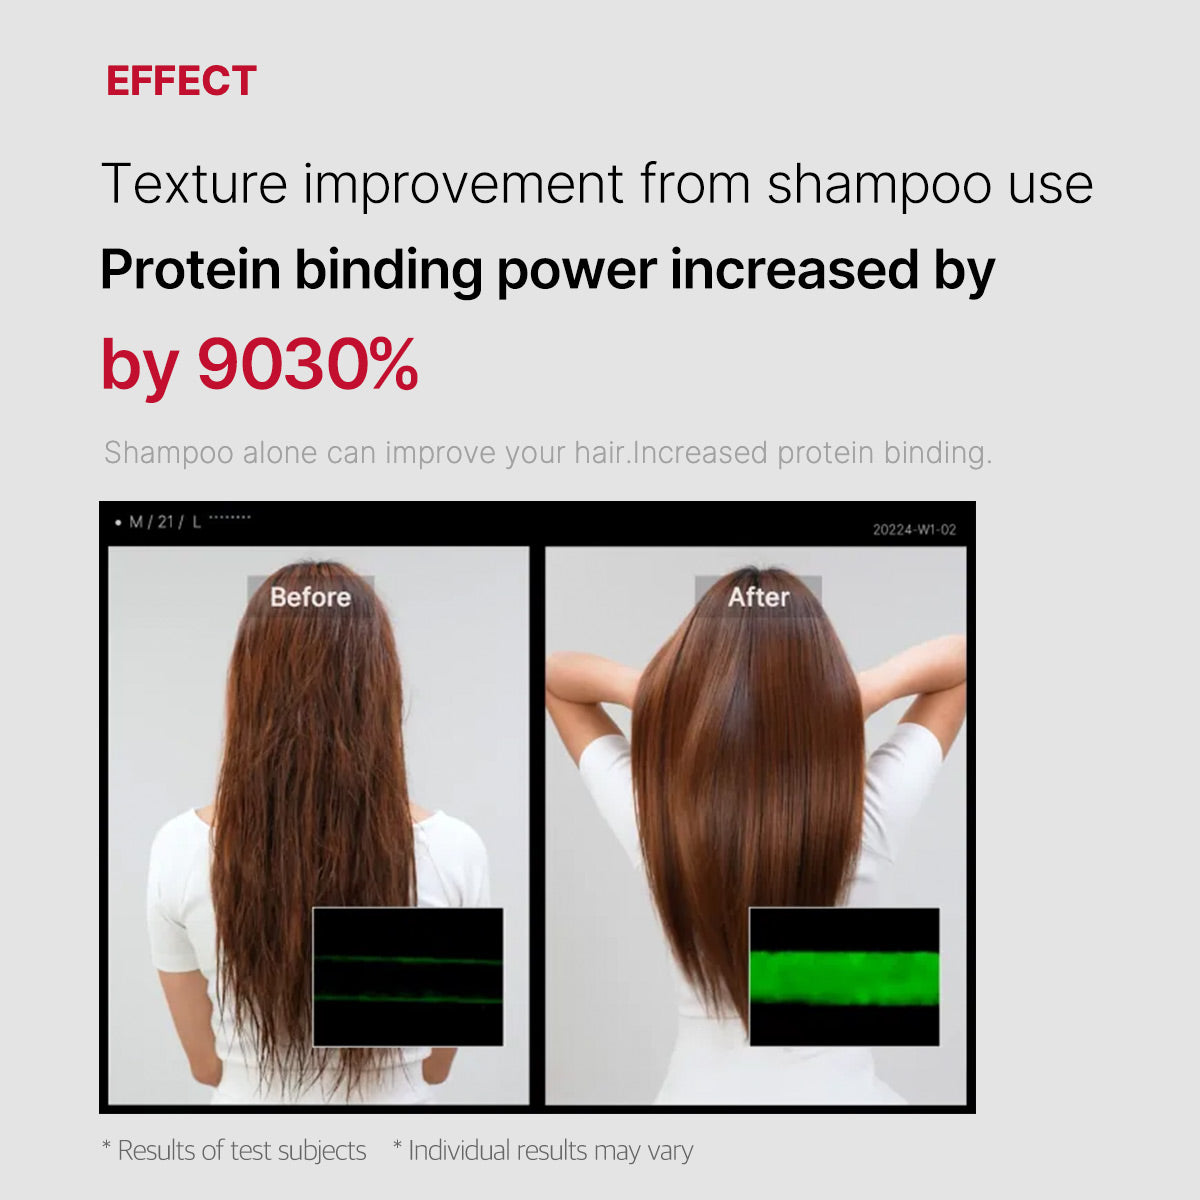 Soy Protein LPP Silk Shampoo